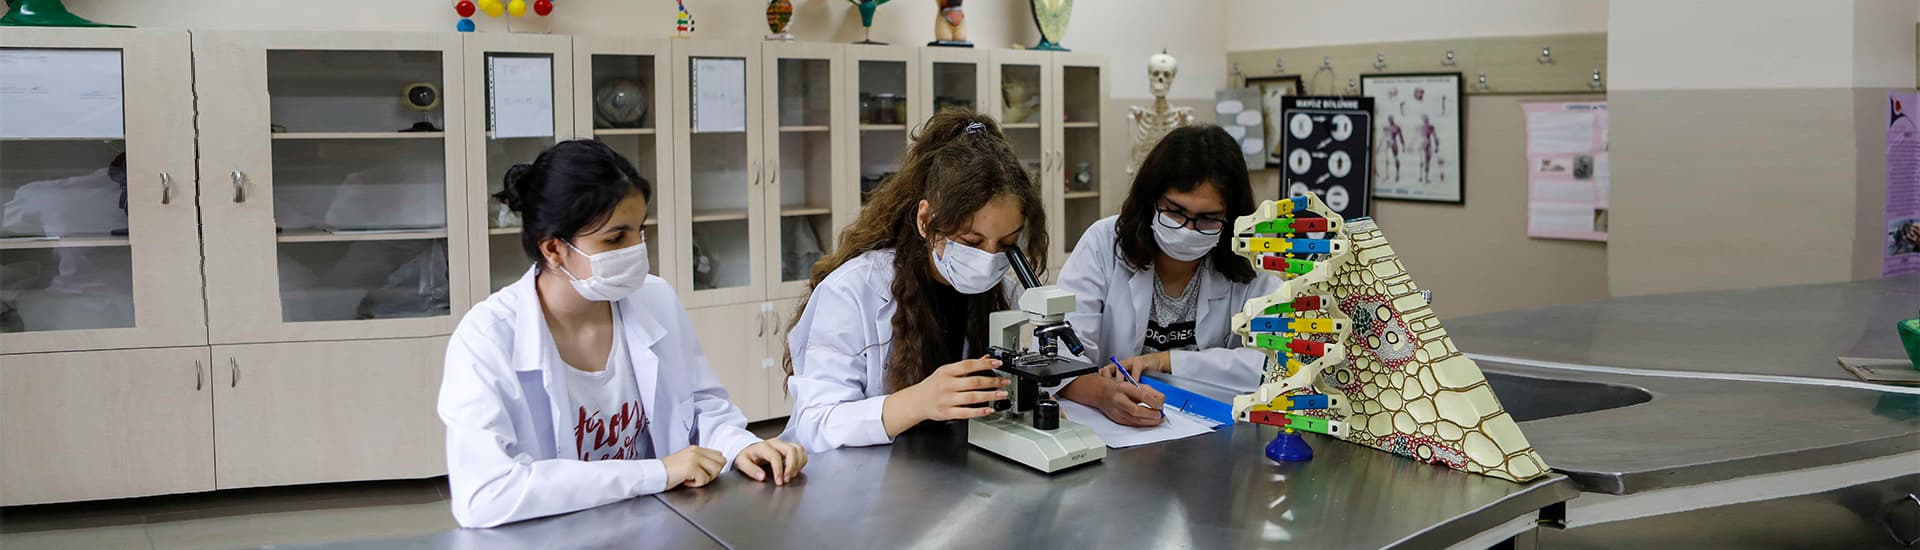 Aydem Fen Lisesi'nde laboratuvar çalışması yapan öğrencilerin temsili görselidir.